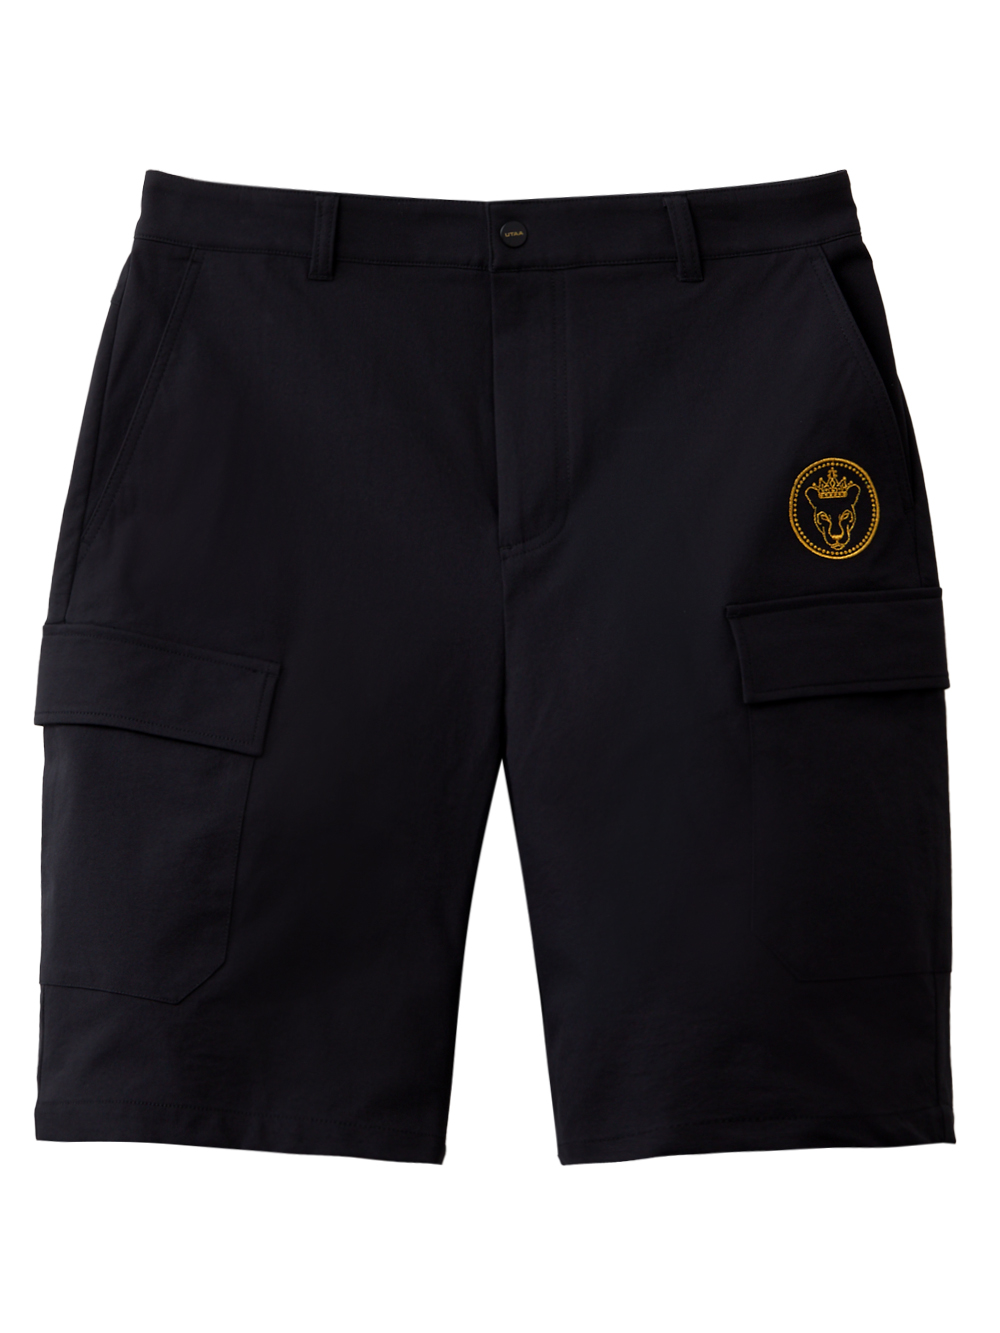 UTAA Empire Ring Panther Short Pants : Black  (UC3PSM803BK)